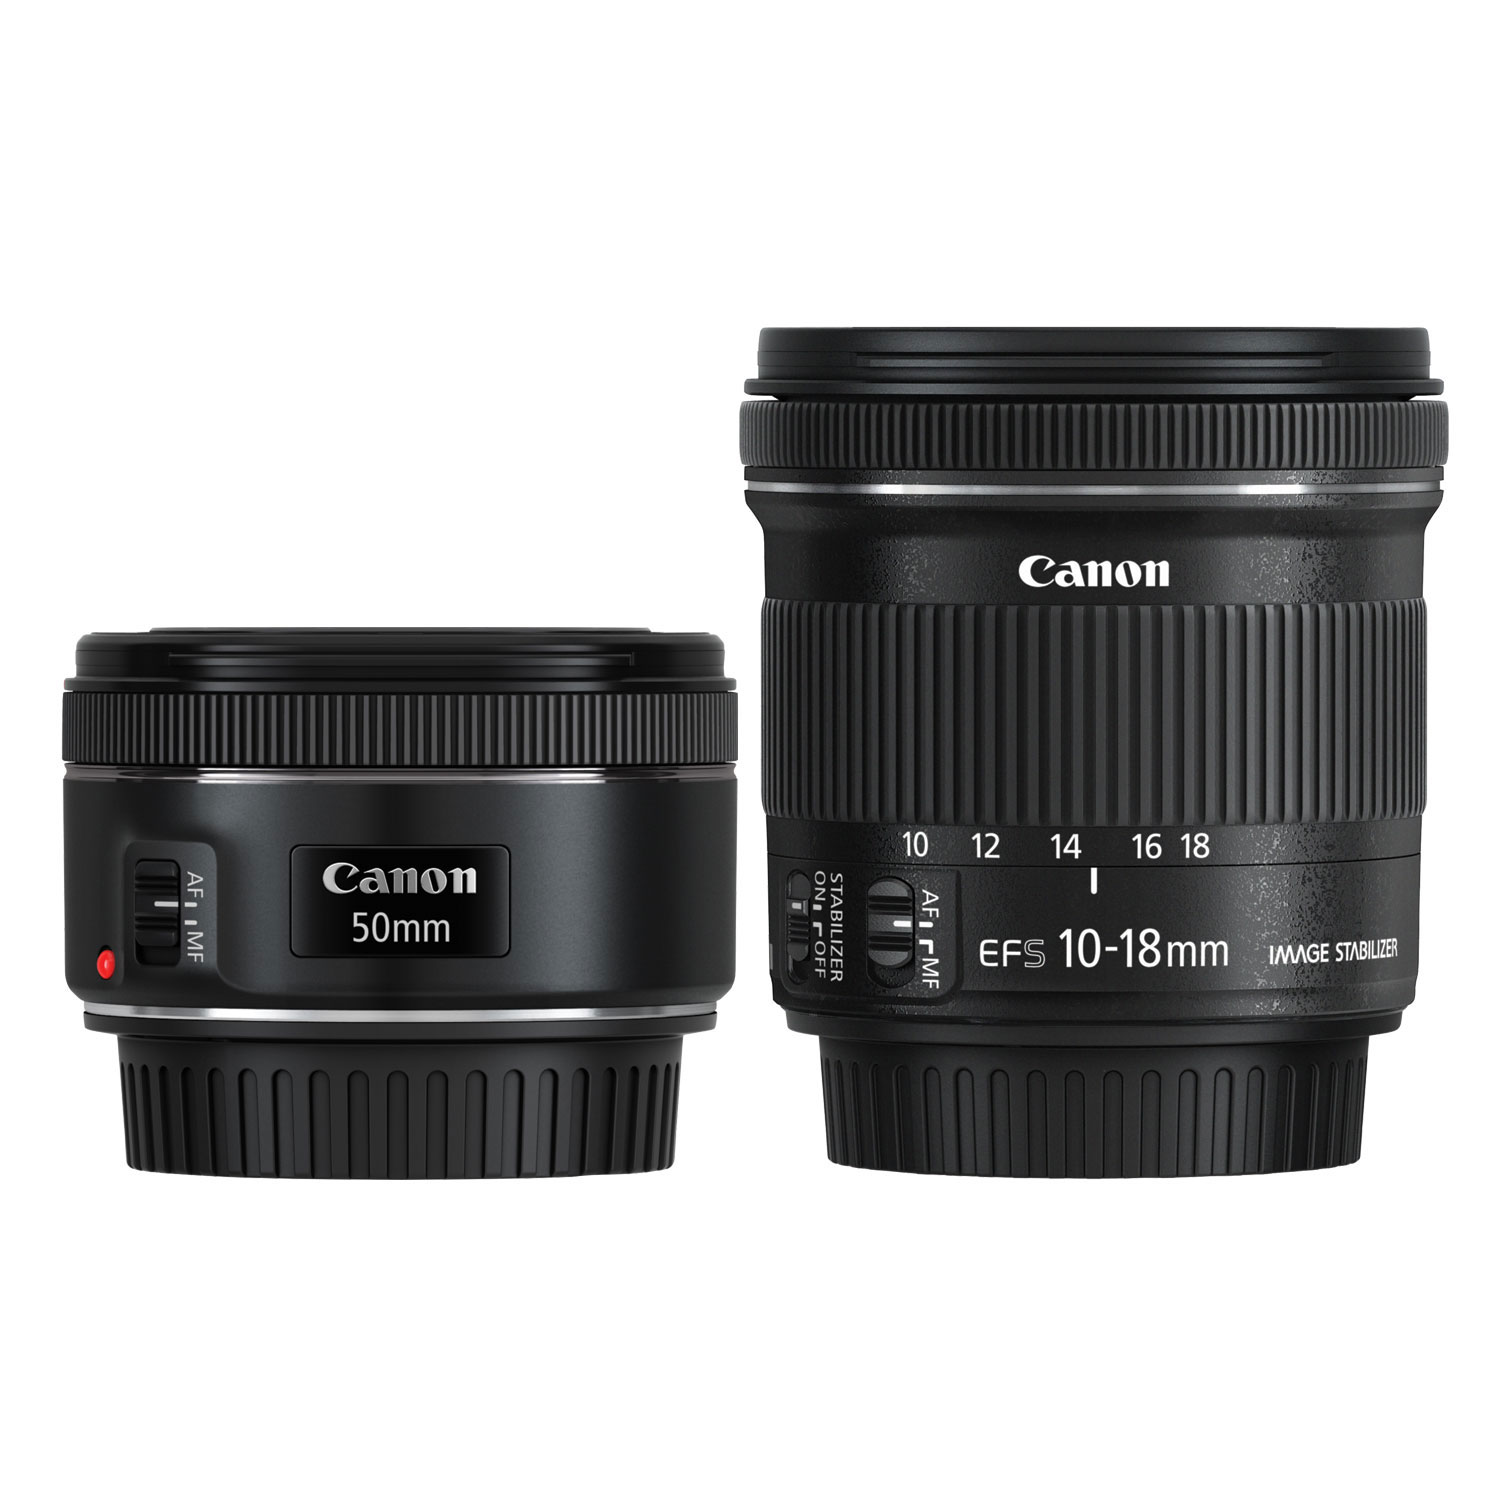 Canon EF 50mm f/1.8 & EF-S 10-18mm f/4.5-5.6 DSLR Lens Bundle